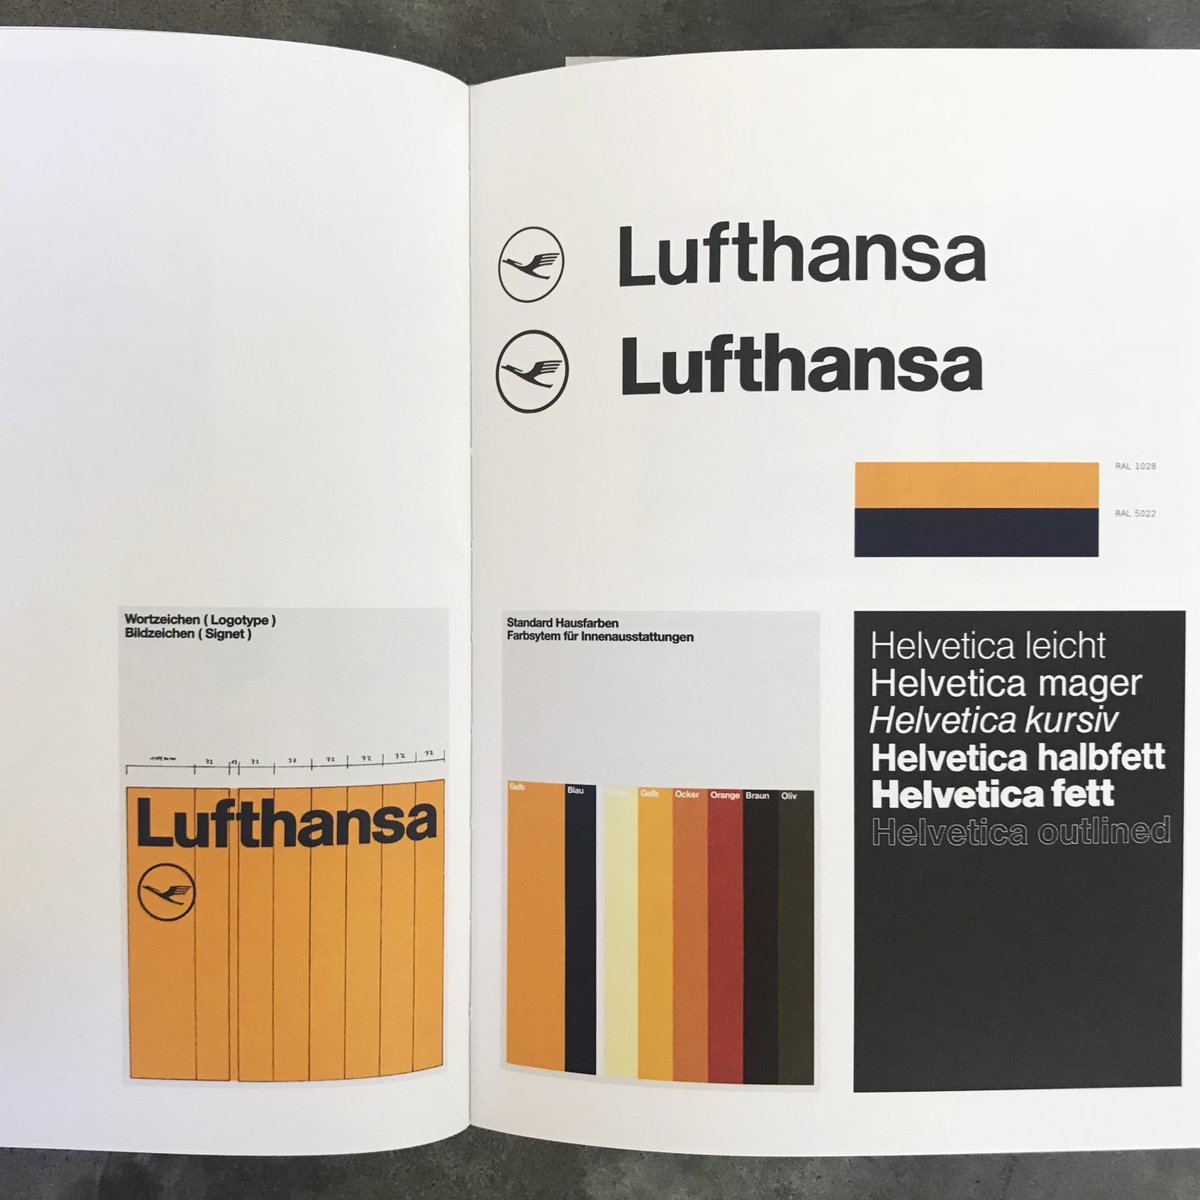 Diseño de Otl Aicher para Lufthansa.